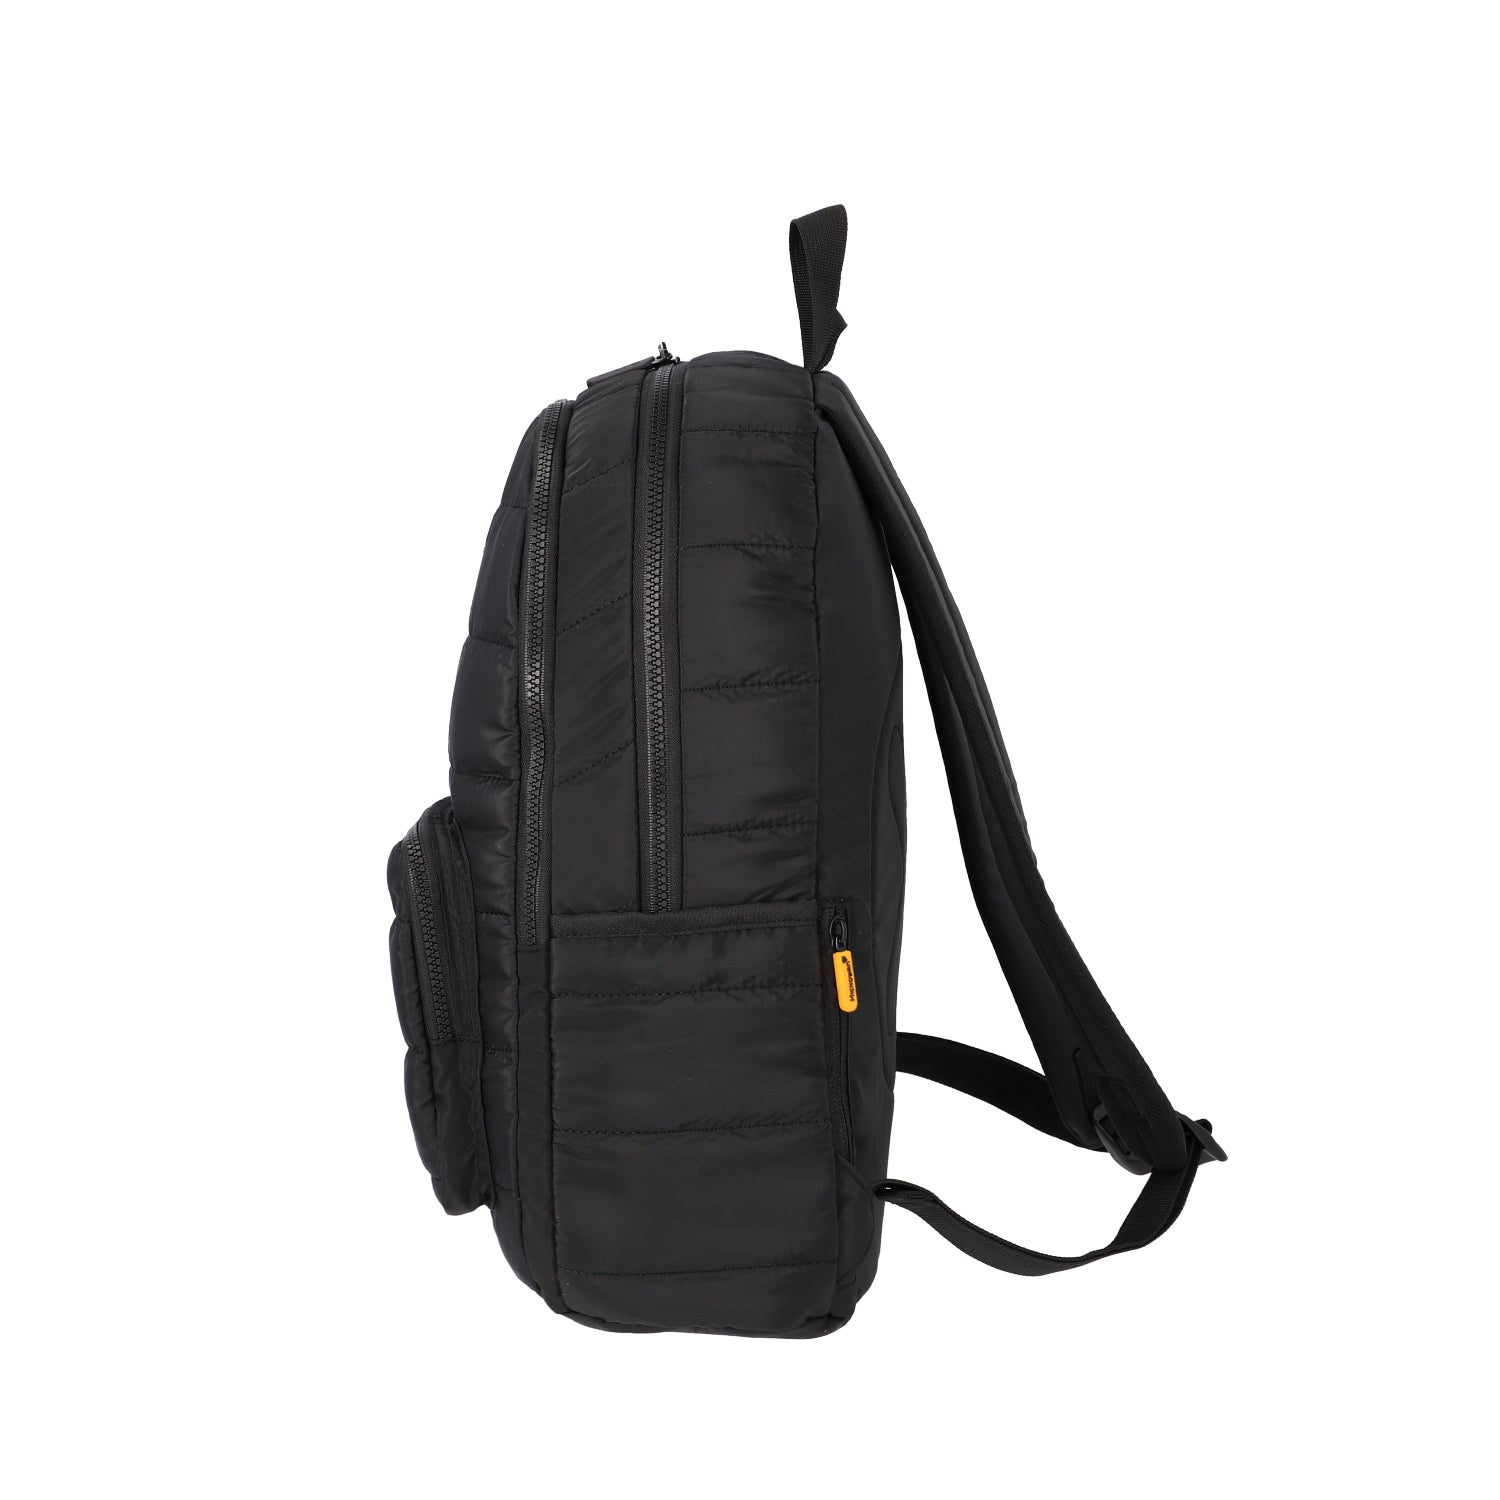 Mochila Lifestyle Backpack Hamilton 236 Black